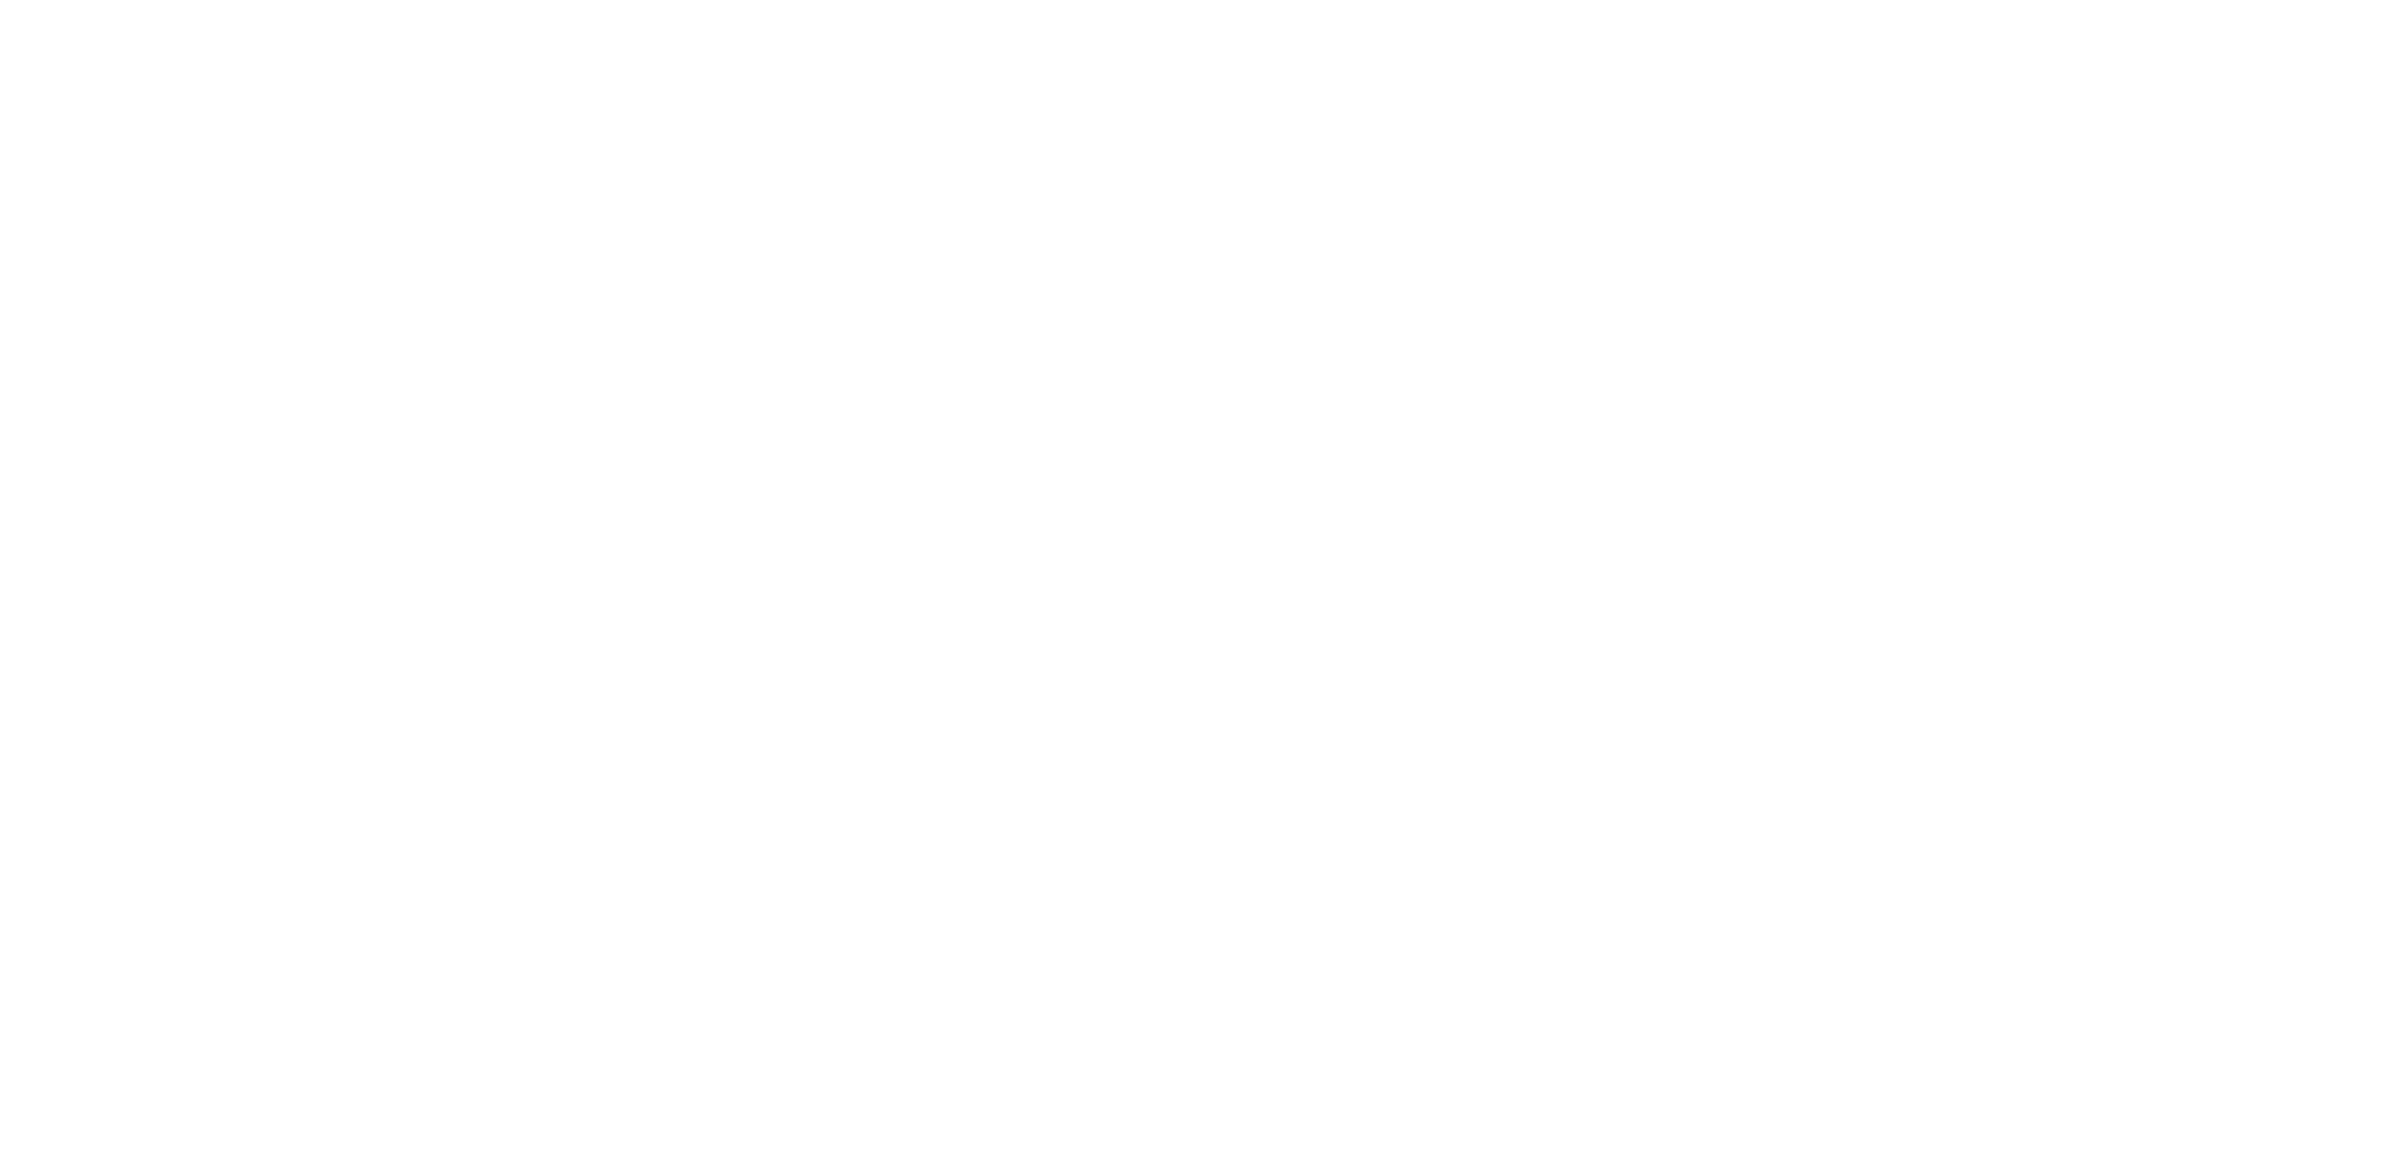 Rey beauty 